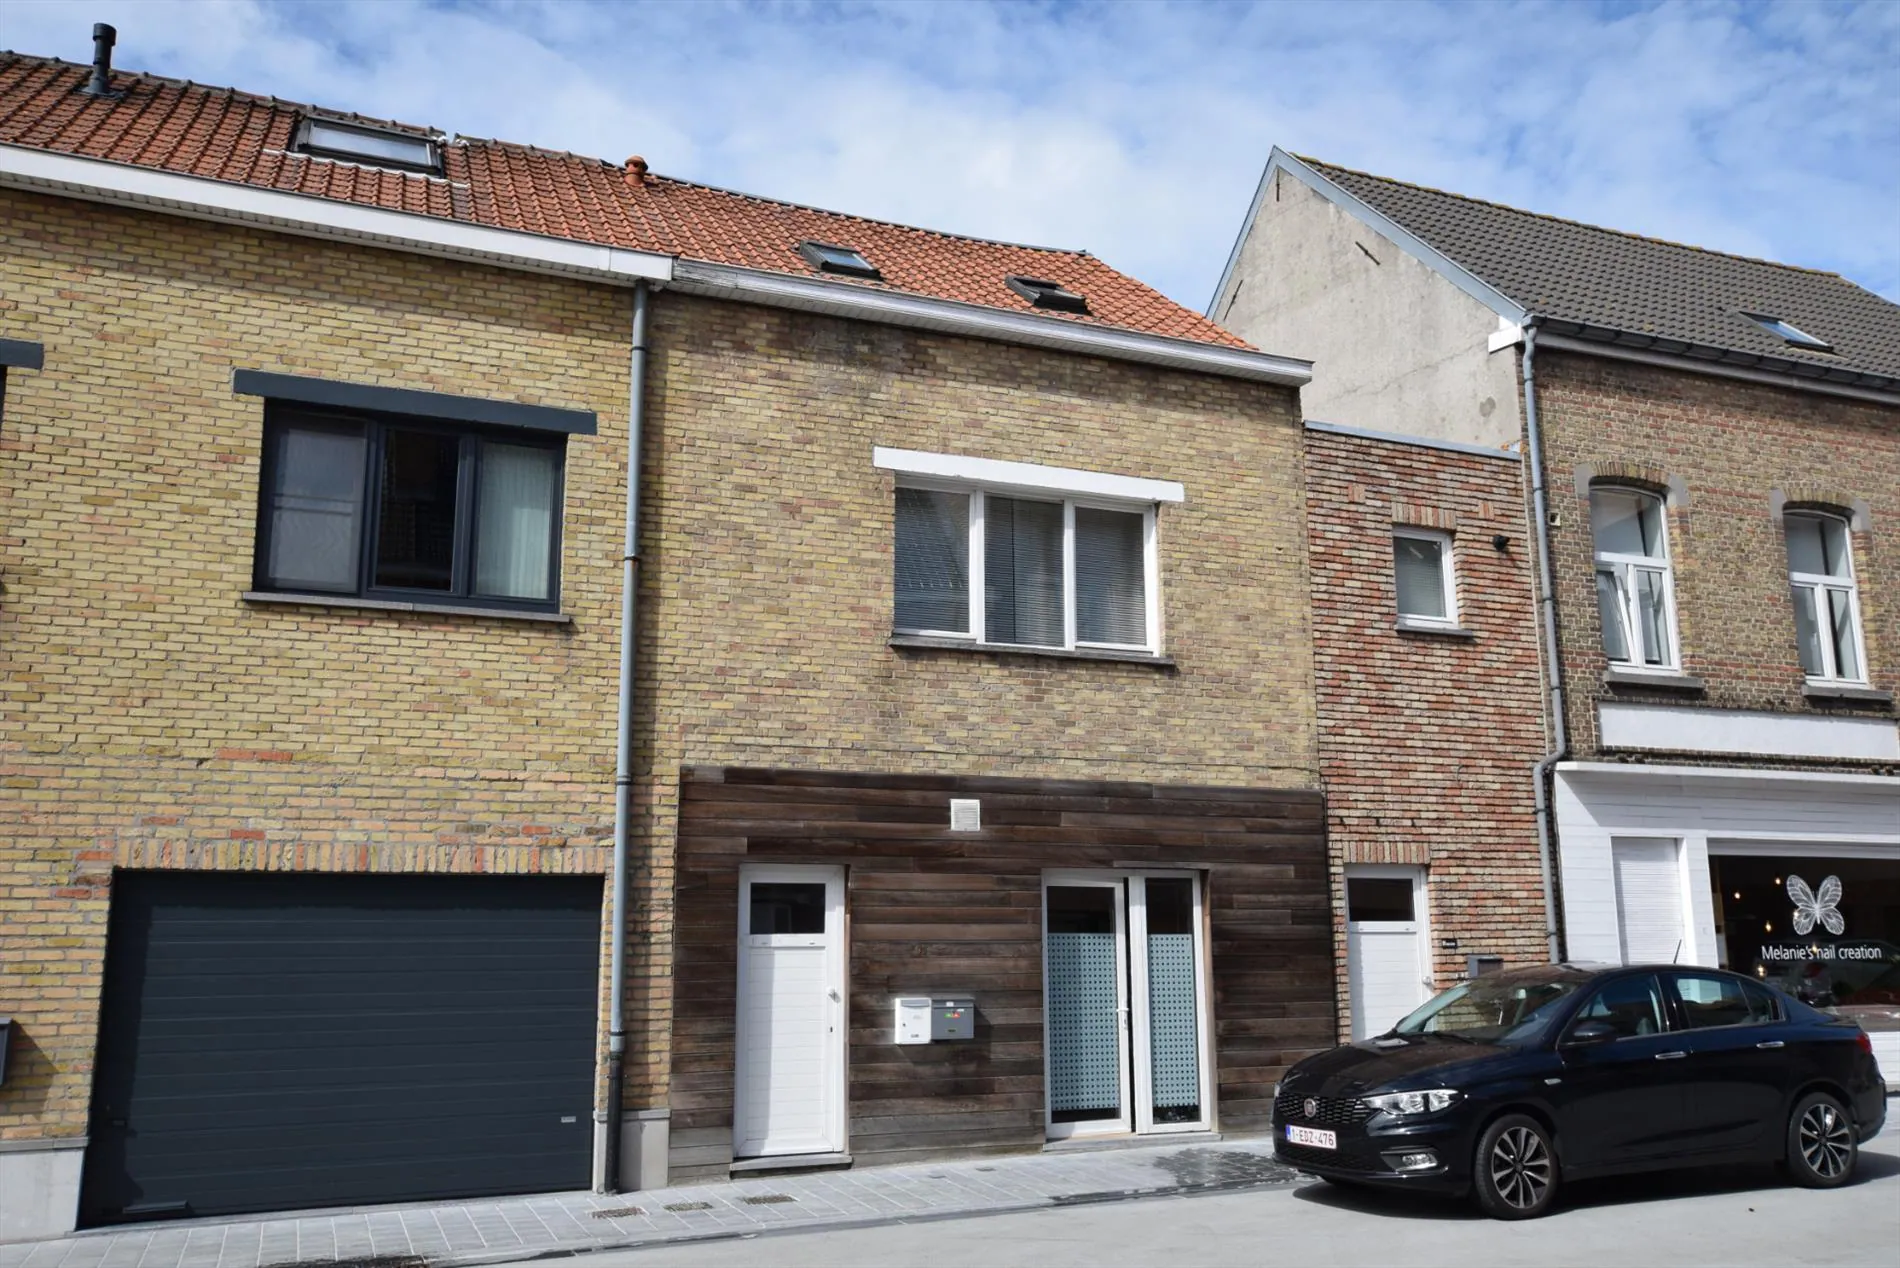 Woning met duplexappartement en studio/handelsruimte op het gelijkvloers te Nieuwpoort-stad.